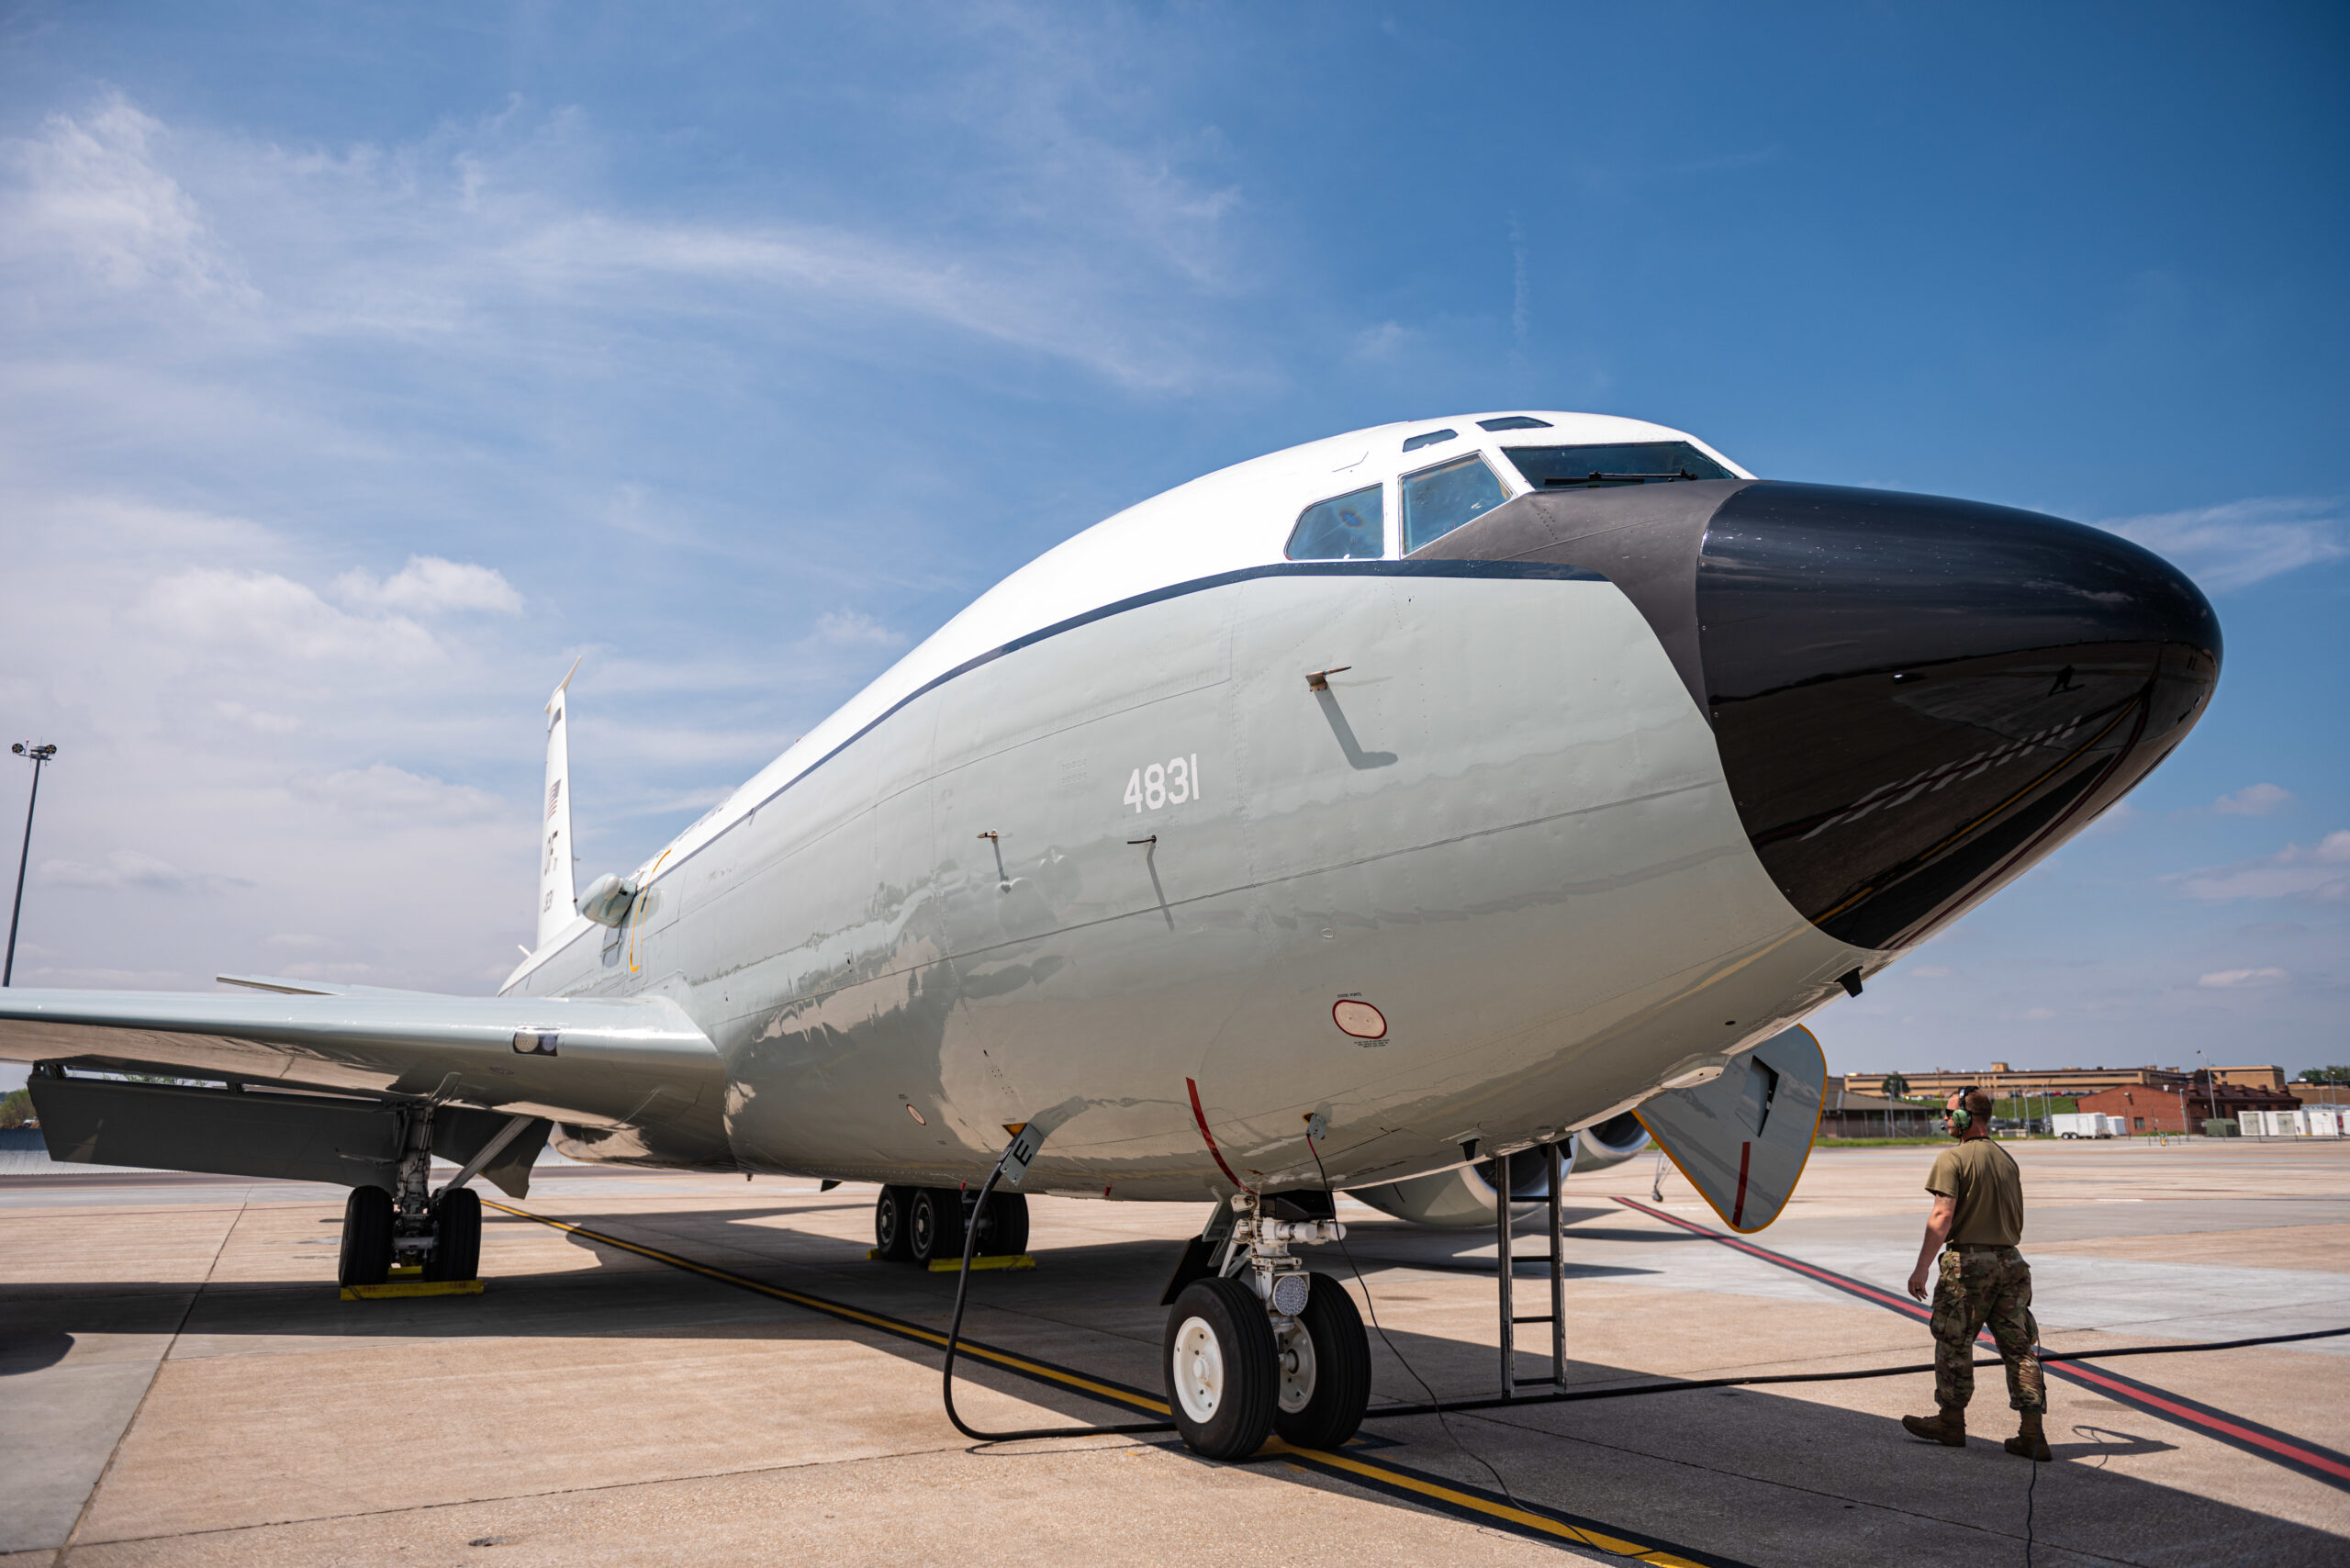 Samolot WC-135R do wykrywania skażenia radioaktywnego. Fot. U.S. Air Force.